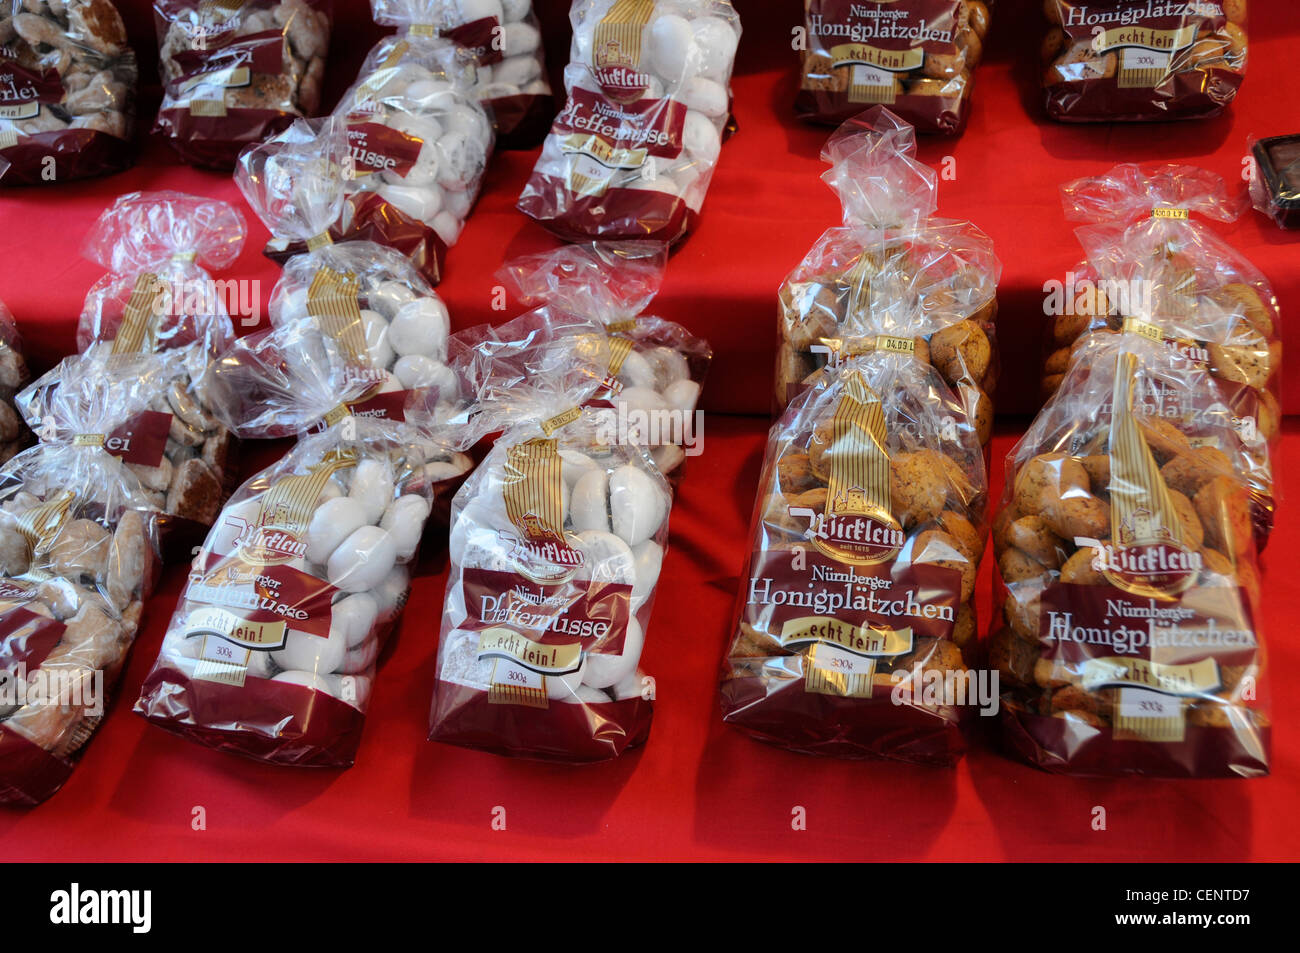 Una mostra di pan di zenzero in una bancarella di mercato a Norimberga, Germania Foto Stock